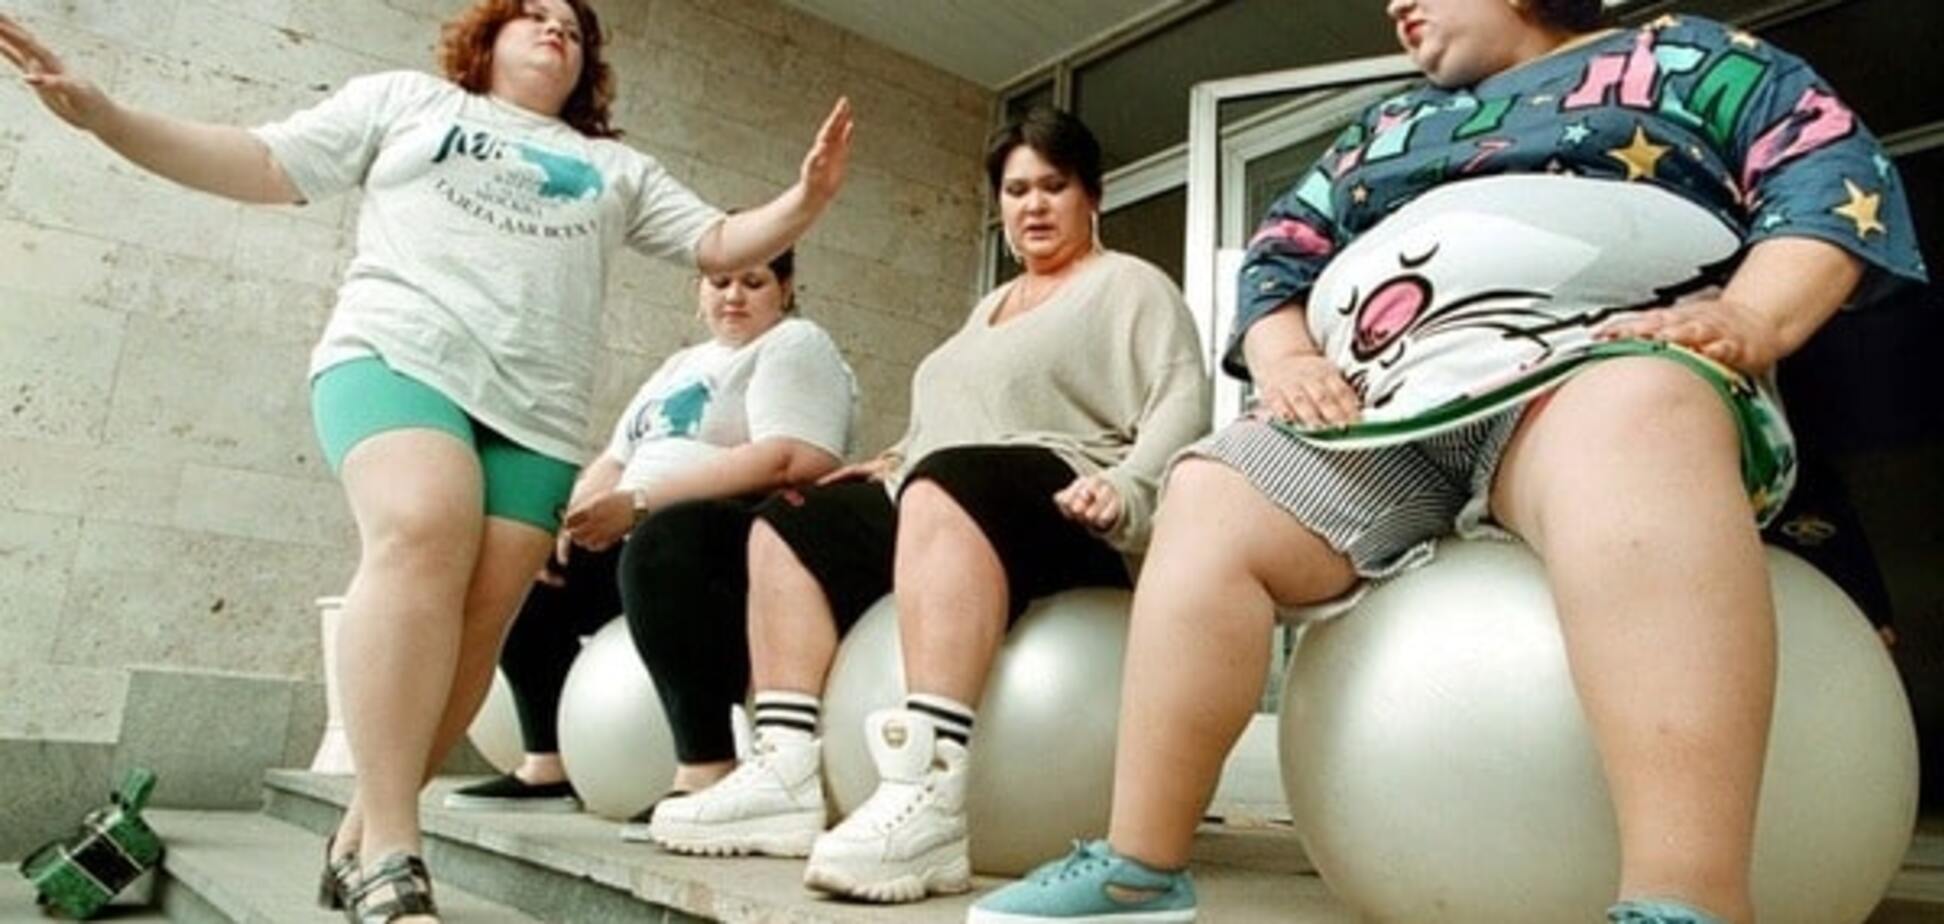 Більше половини українців страждають ожирінням - дослідження